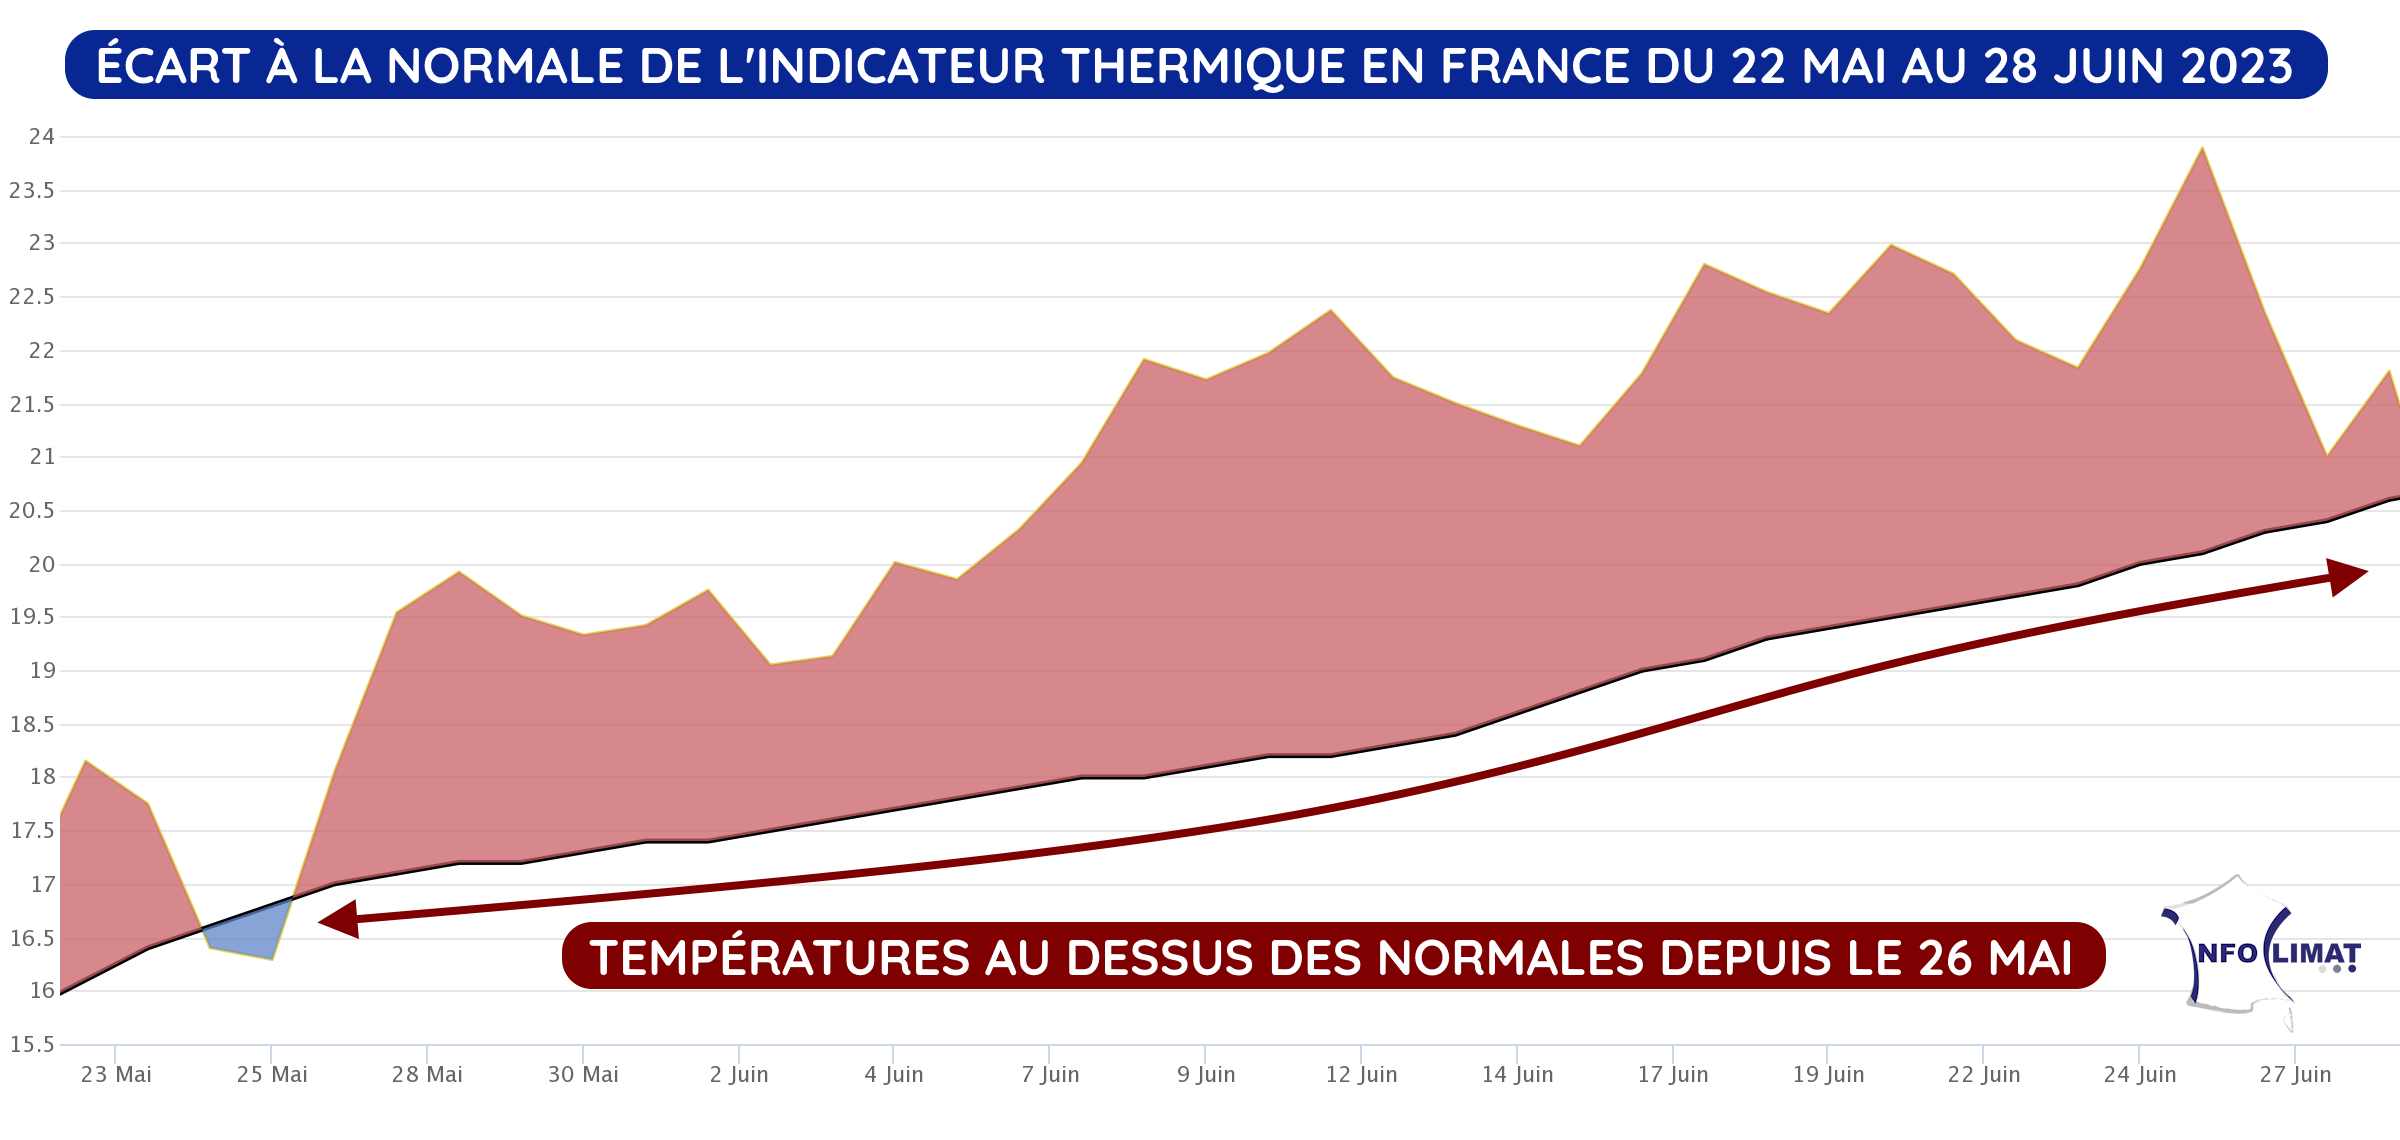 Écart à la normale de la température moyenne en France du 22 mai au 28 juin 2023